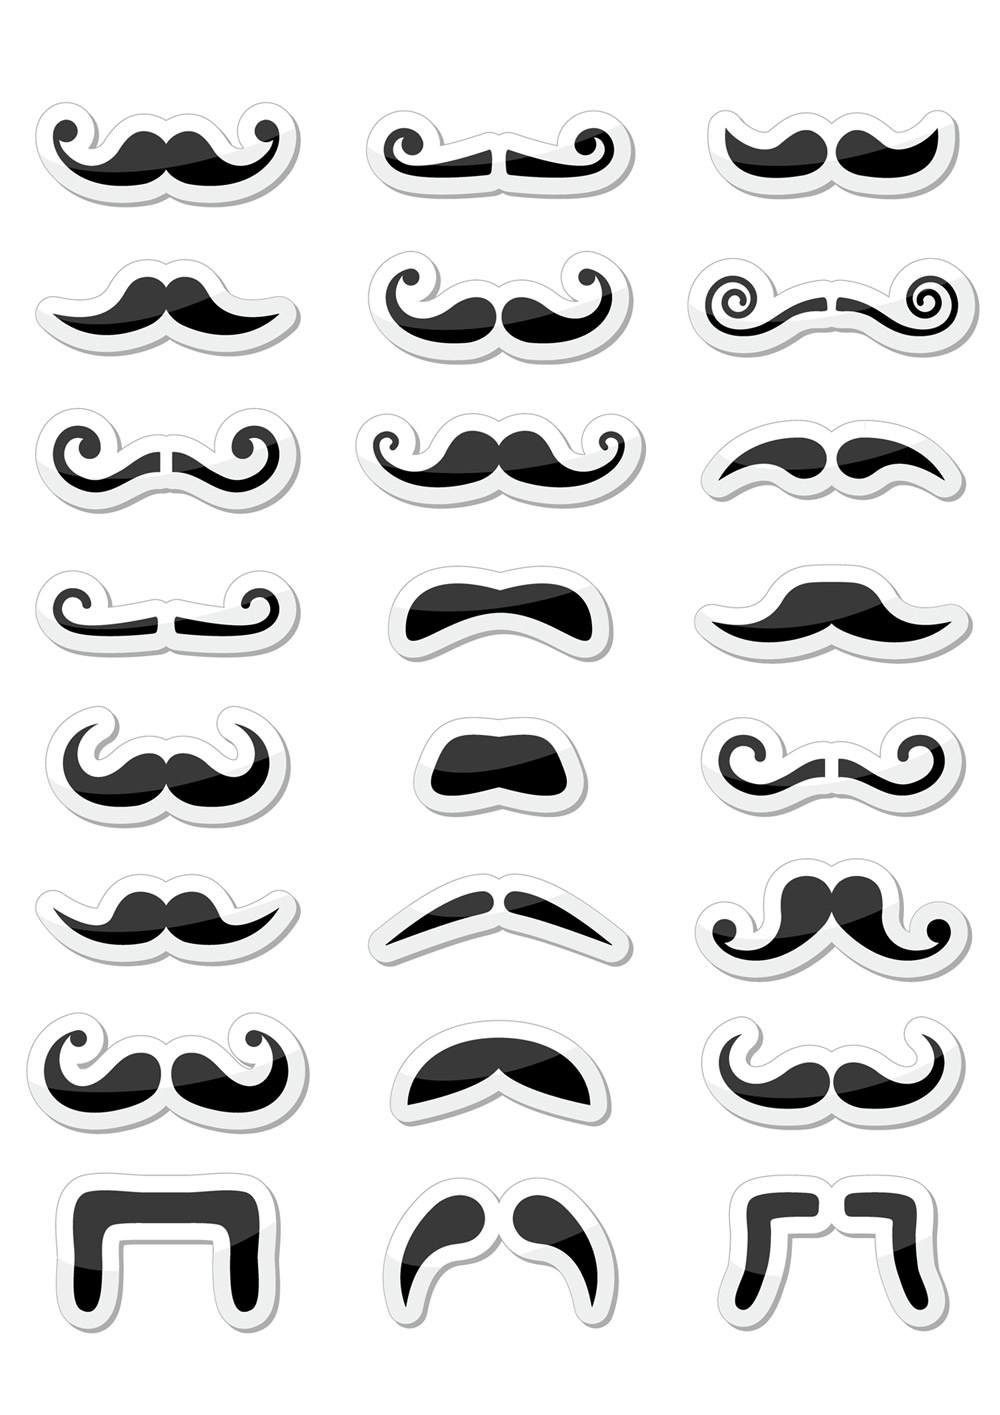 Movember 2014 a fúzačenie je tu! Ktorý fúzy si necháte narásť? Vytlačte si šablonu, vystrihnite fúzy, nalepte ich ideálne na špajdľu a skúšajte si ich pred zrkadlom!